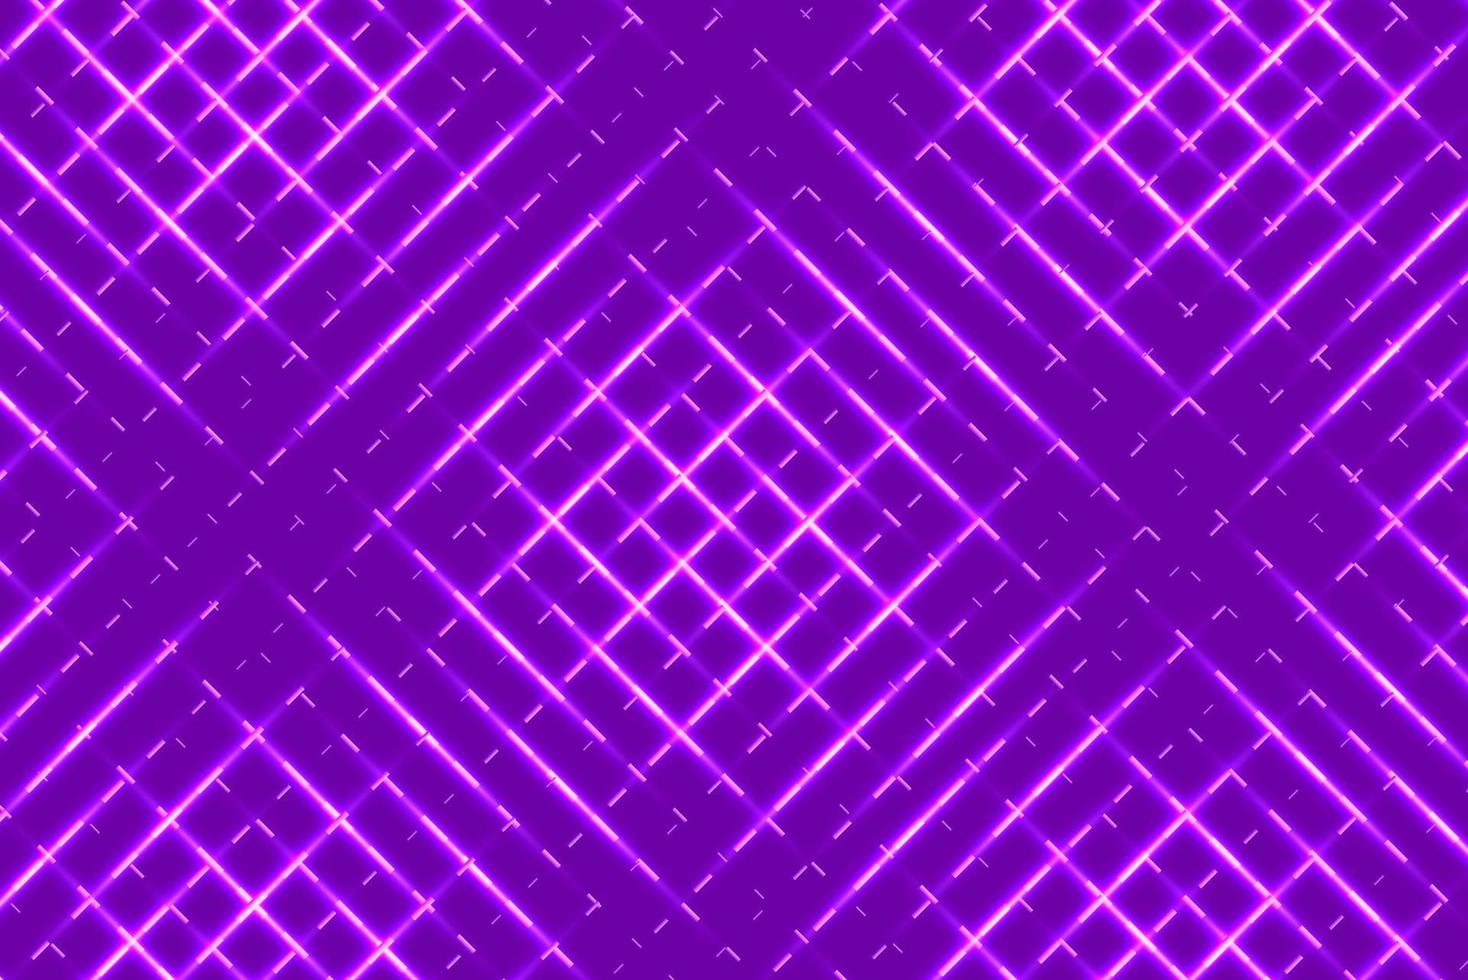 fond abstrait vague violette. vecteur eps10 de composition de formes dynamiques